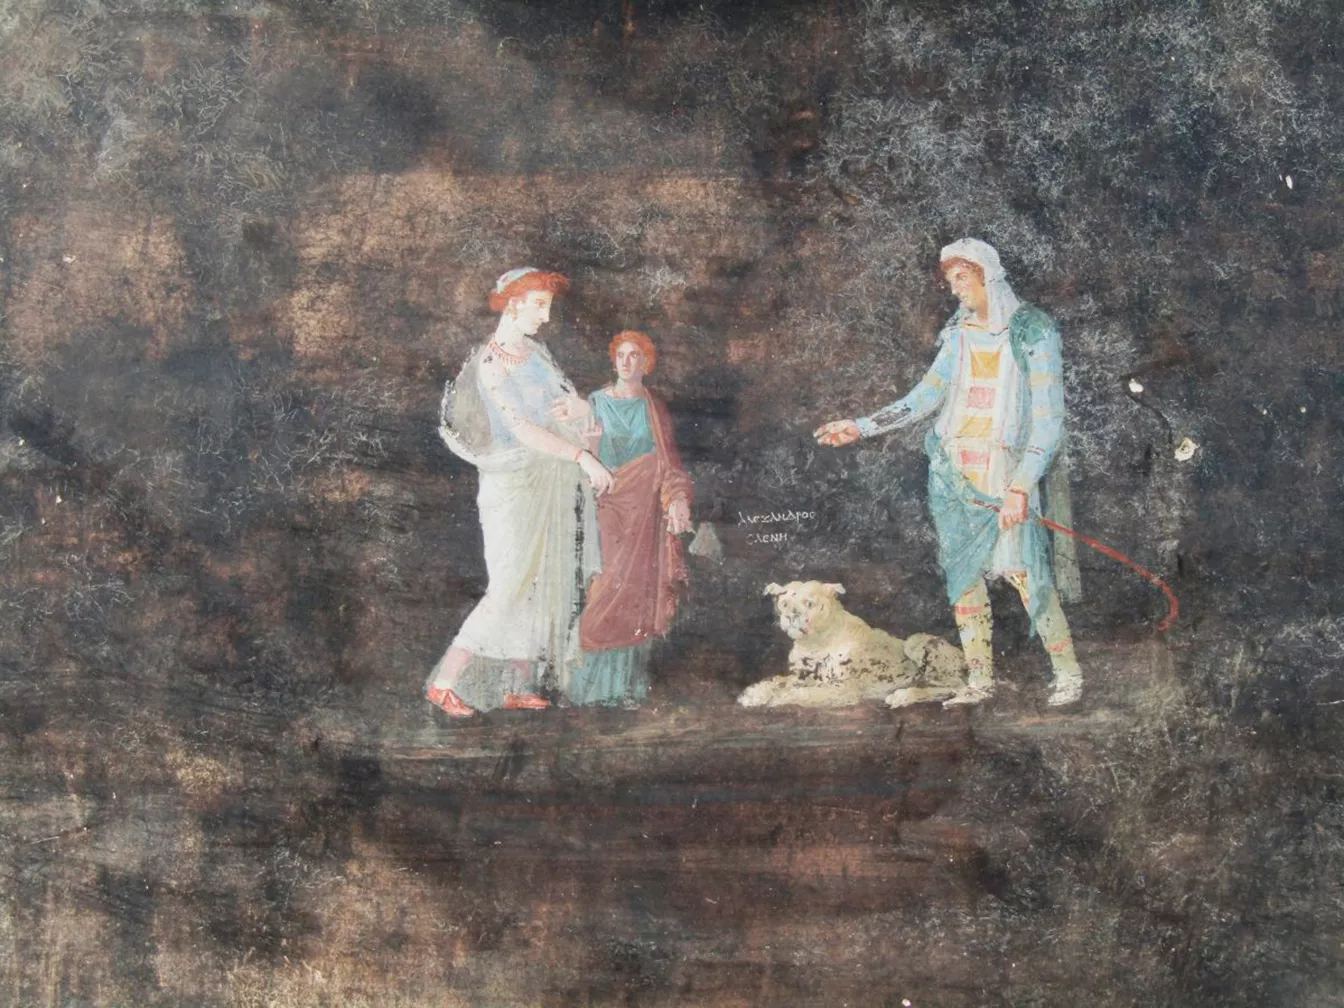 Fresc localitzat a Pompeia que mostra la trobada entre Helena i Paris, el príncep de Troia